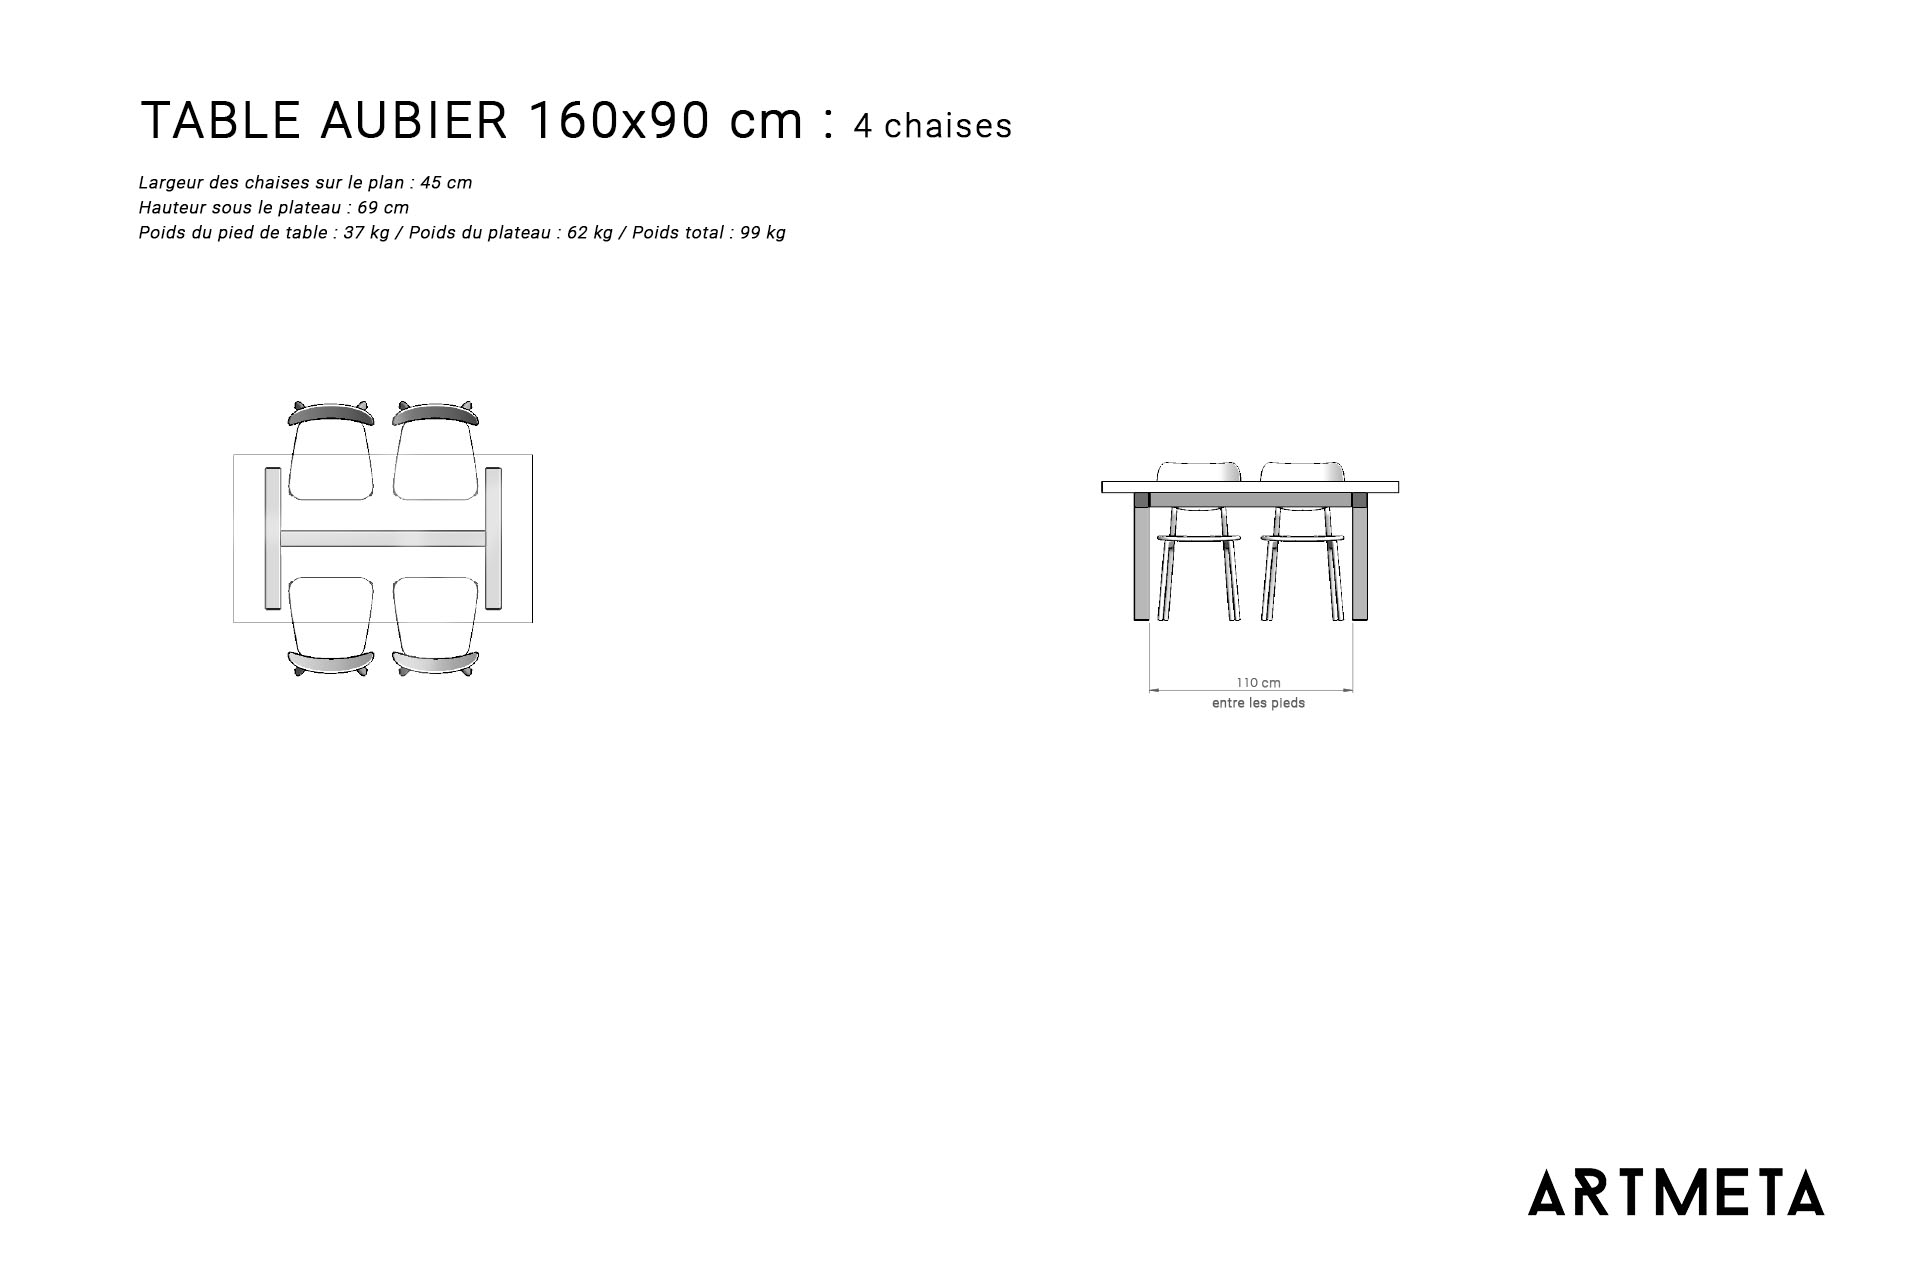 Guide des dimensions / Table à manger pour 4 personnes / Table Aubier ARTMETA